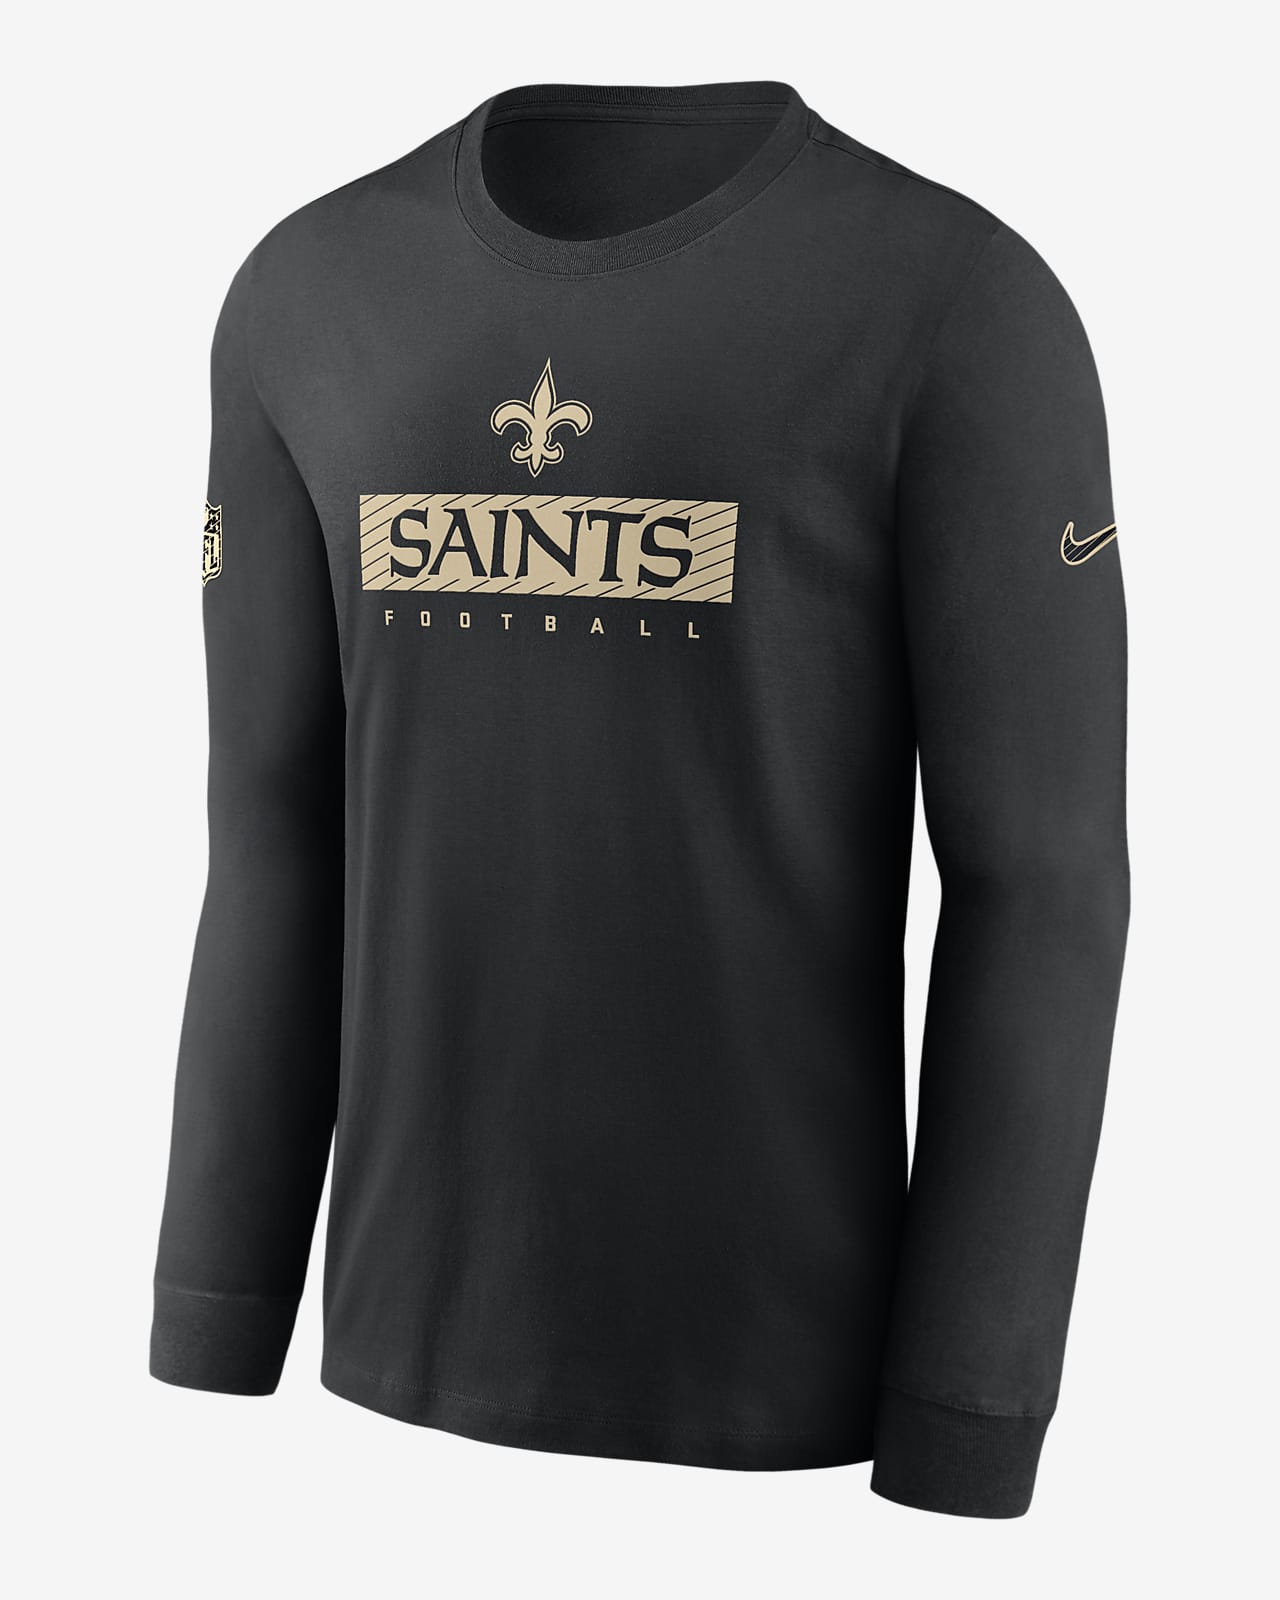 Playera de manga larga Nike Dri-FIT de la NFL para hombre New Orleans Saints Sideline Team Issue